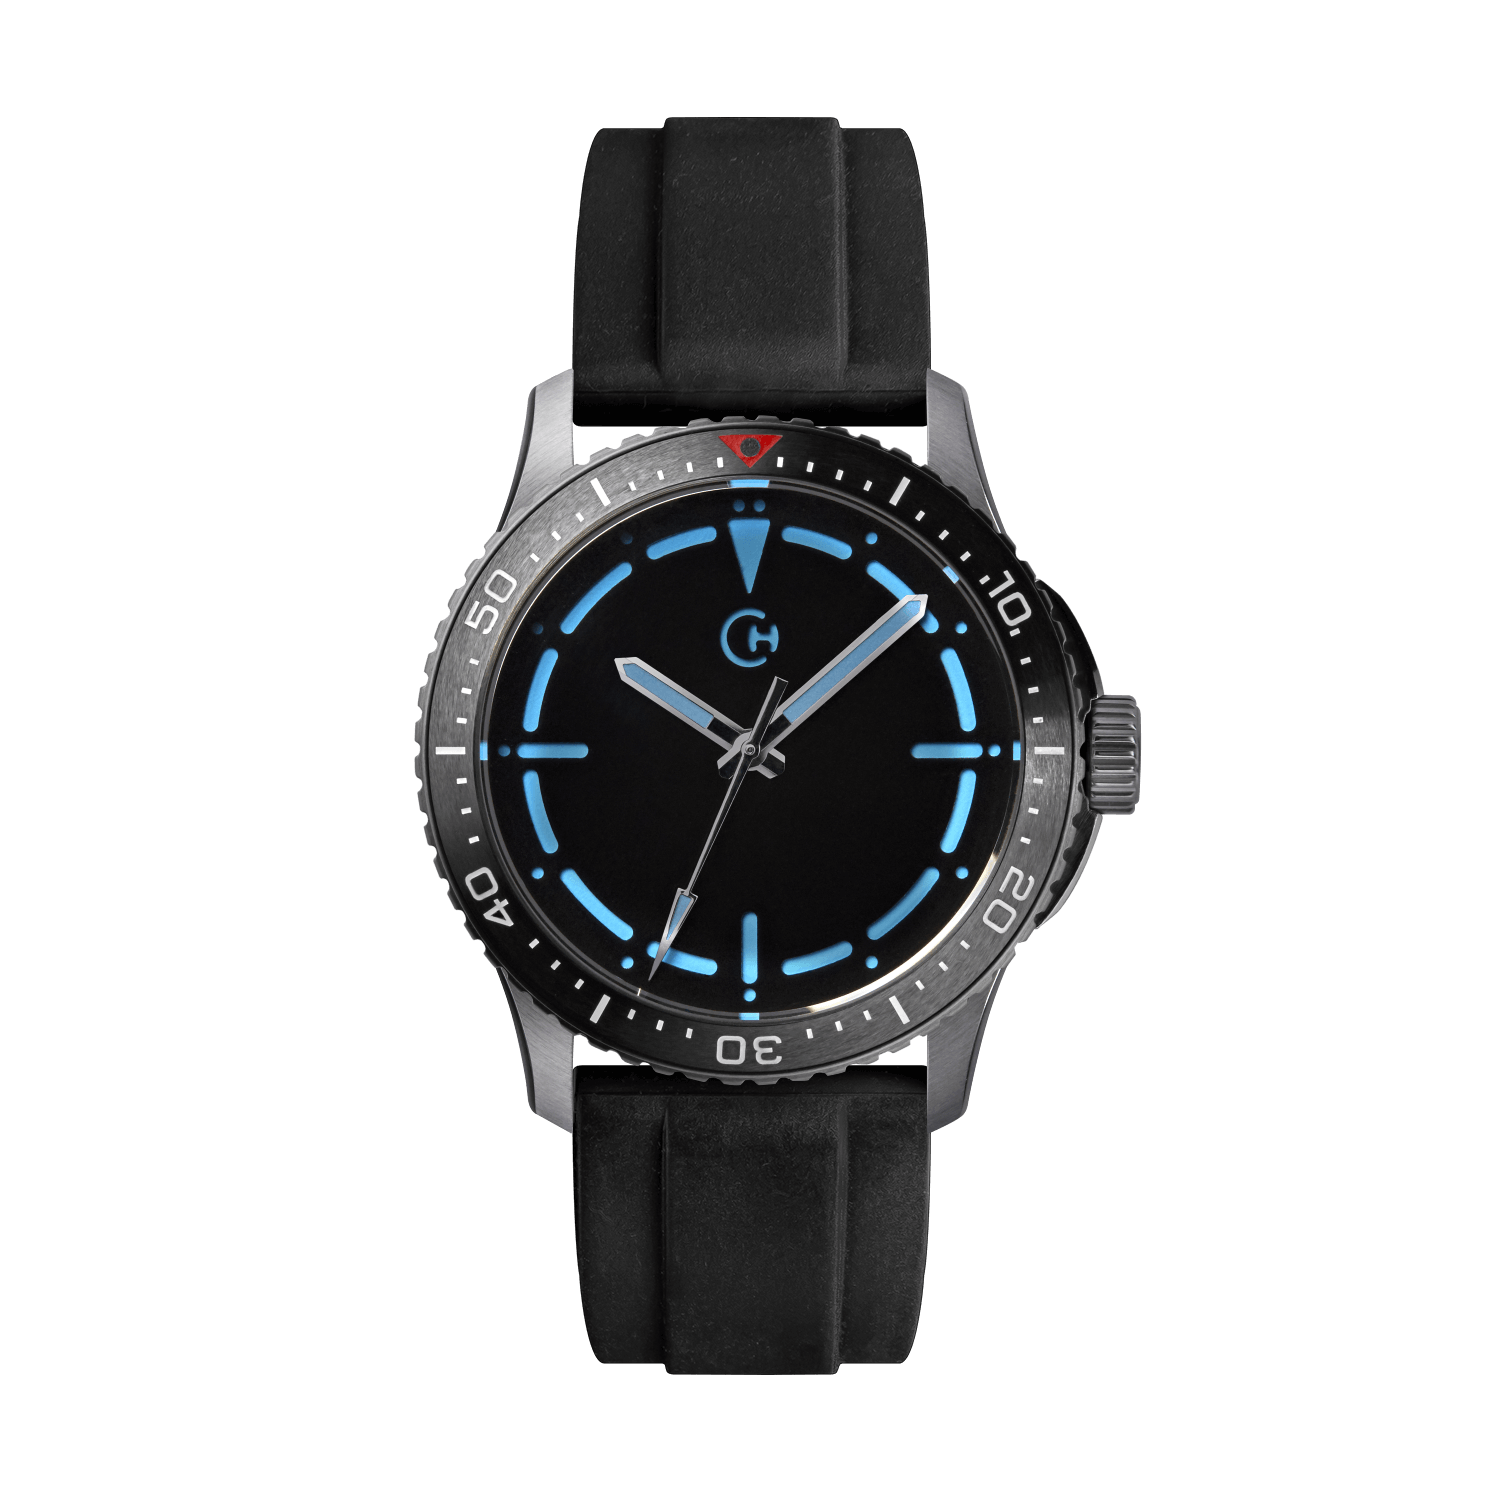 SeaQuest Dive černý gumový řemínek, 22mm, rychloupínací stěžejka, potápěčské hodinky Chronotechna modrý číselník, ocelové pouzdro